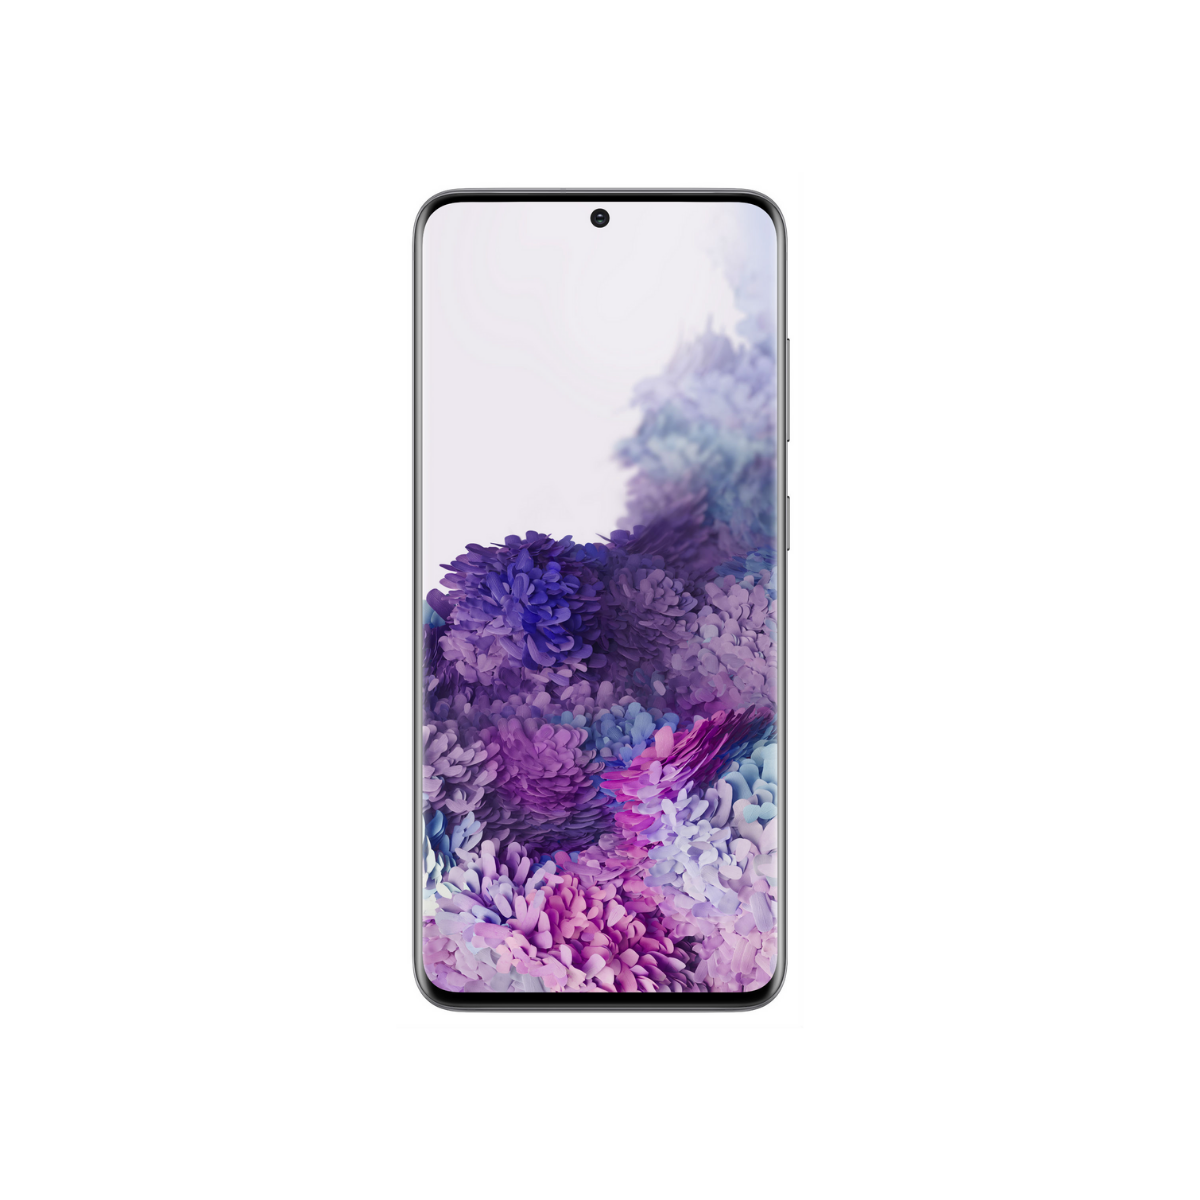 Samsung Galaxy S20 Price | Tech Score